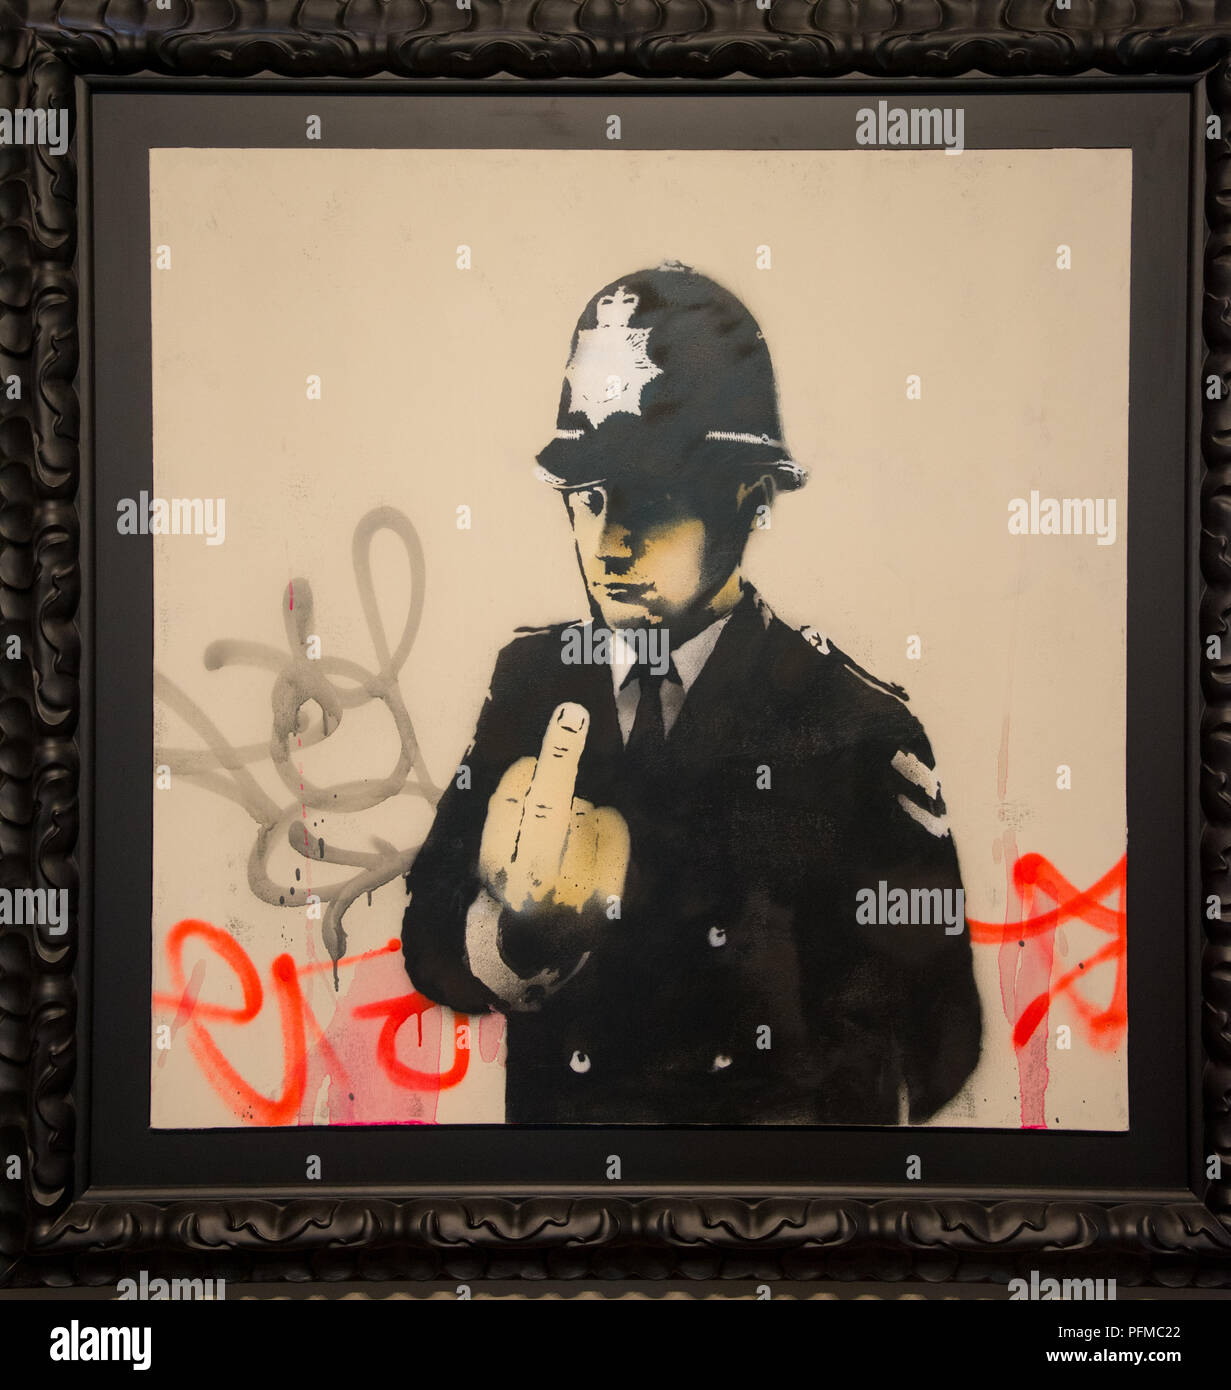 'Rude" in rame da Banksy in esposizione presso MOCO museum di Amsterdam, Olanda Foto Stock